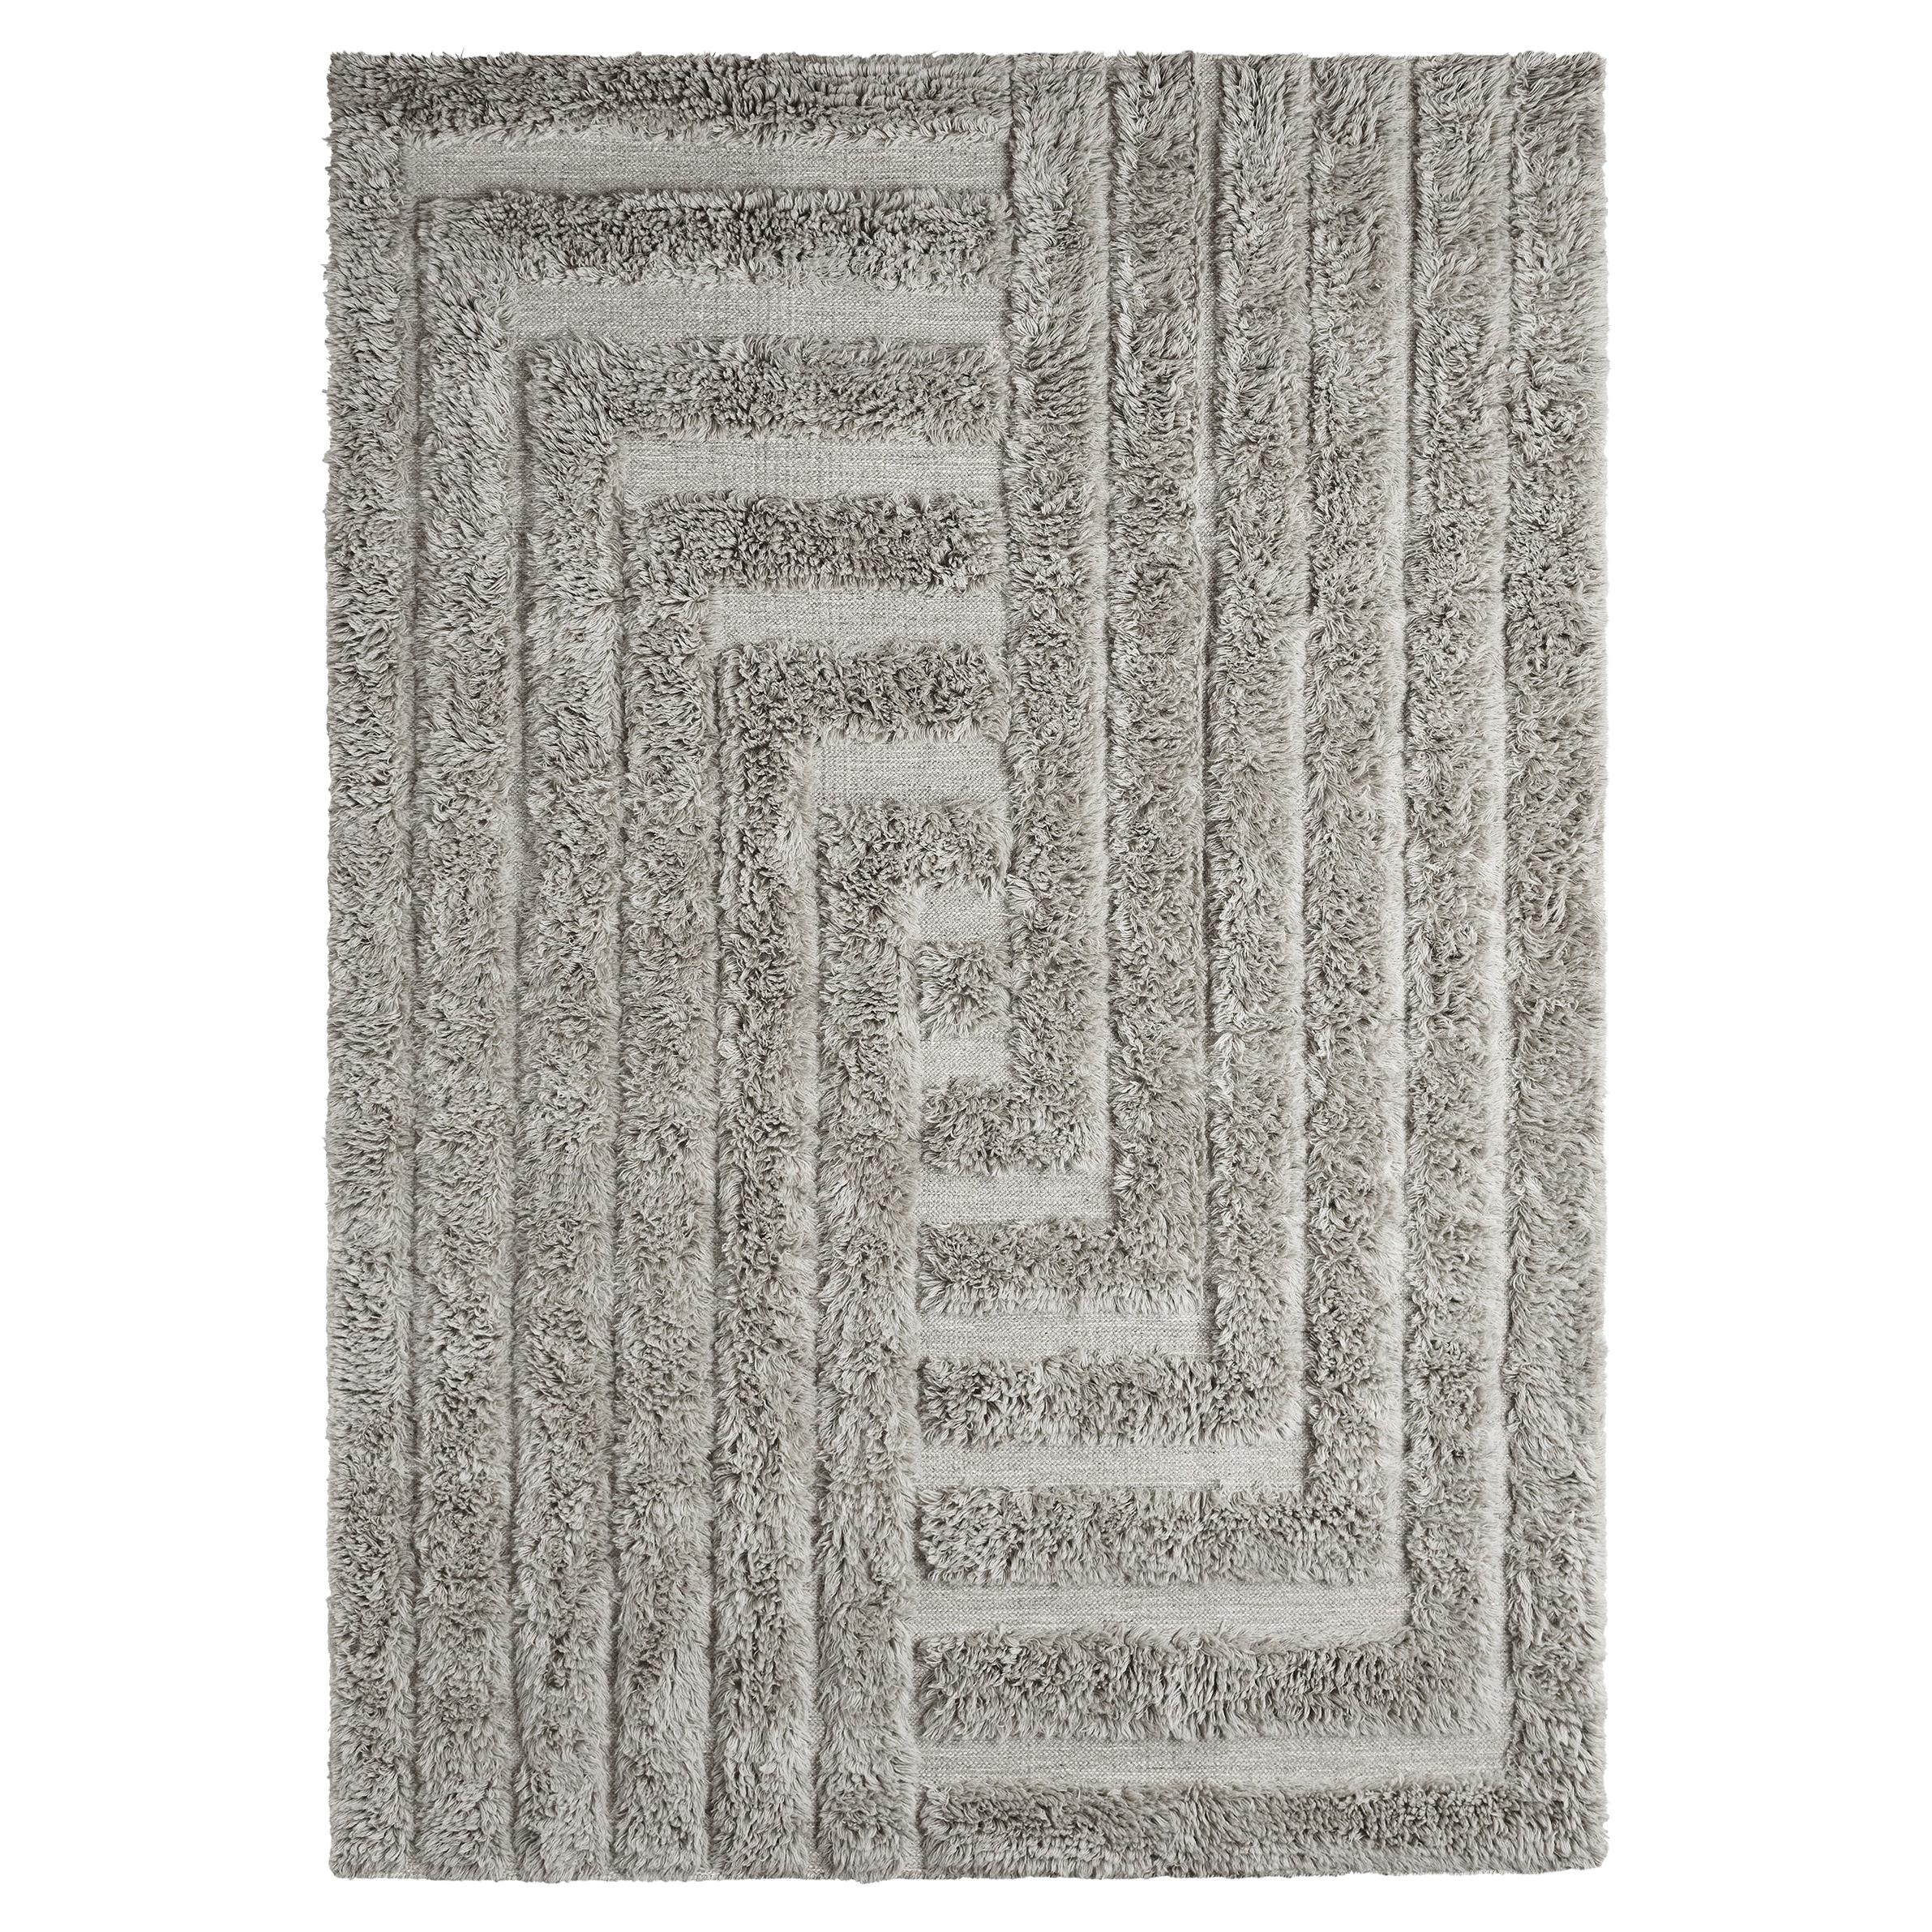 Tapis gris en laine du Labyrinthe épais tissé à la main, petit modèle